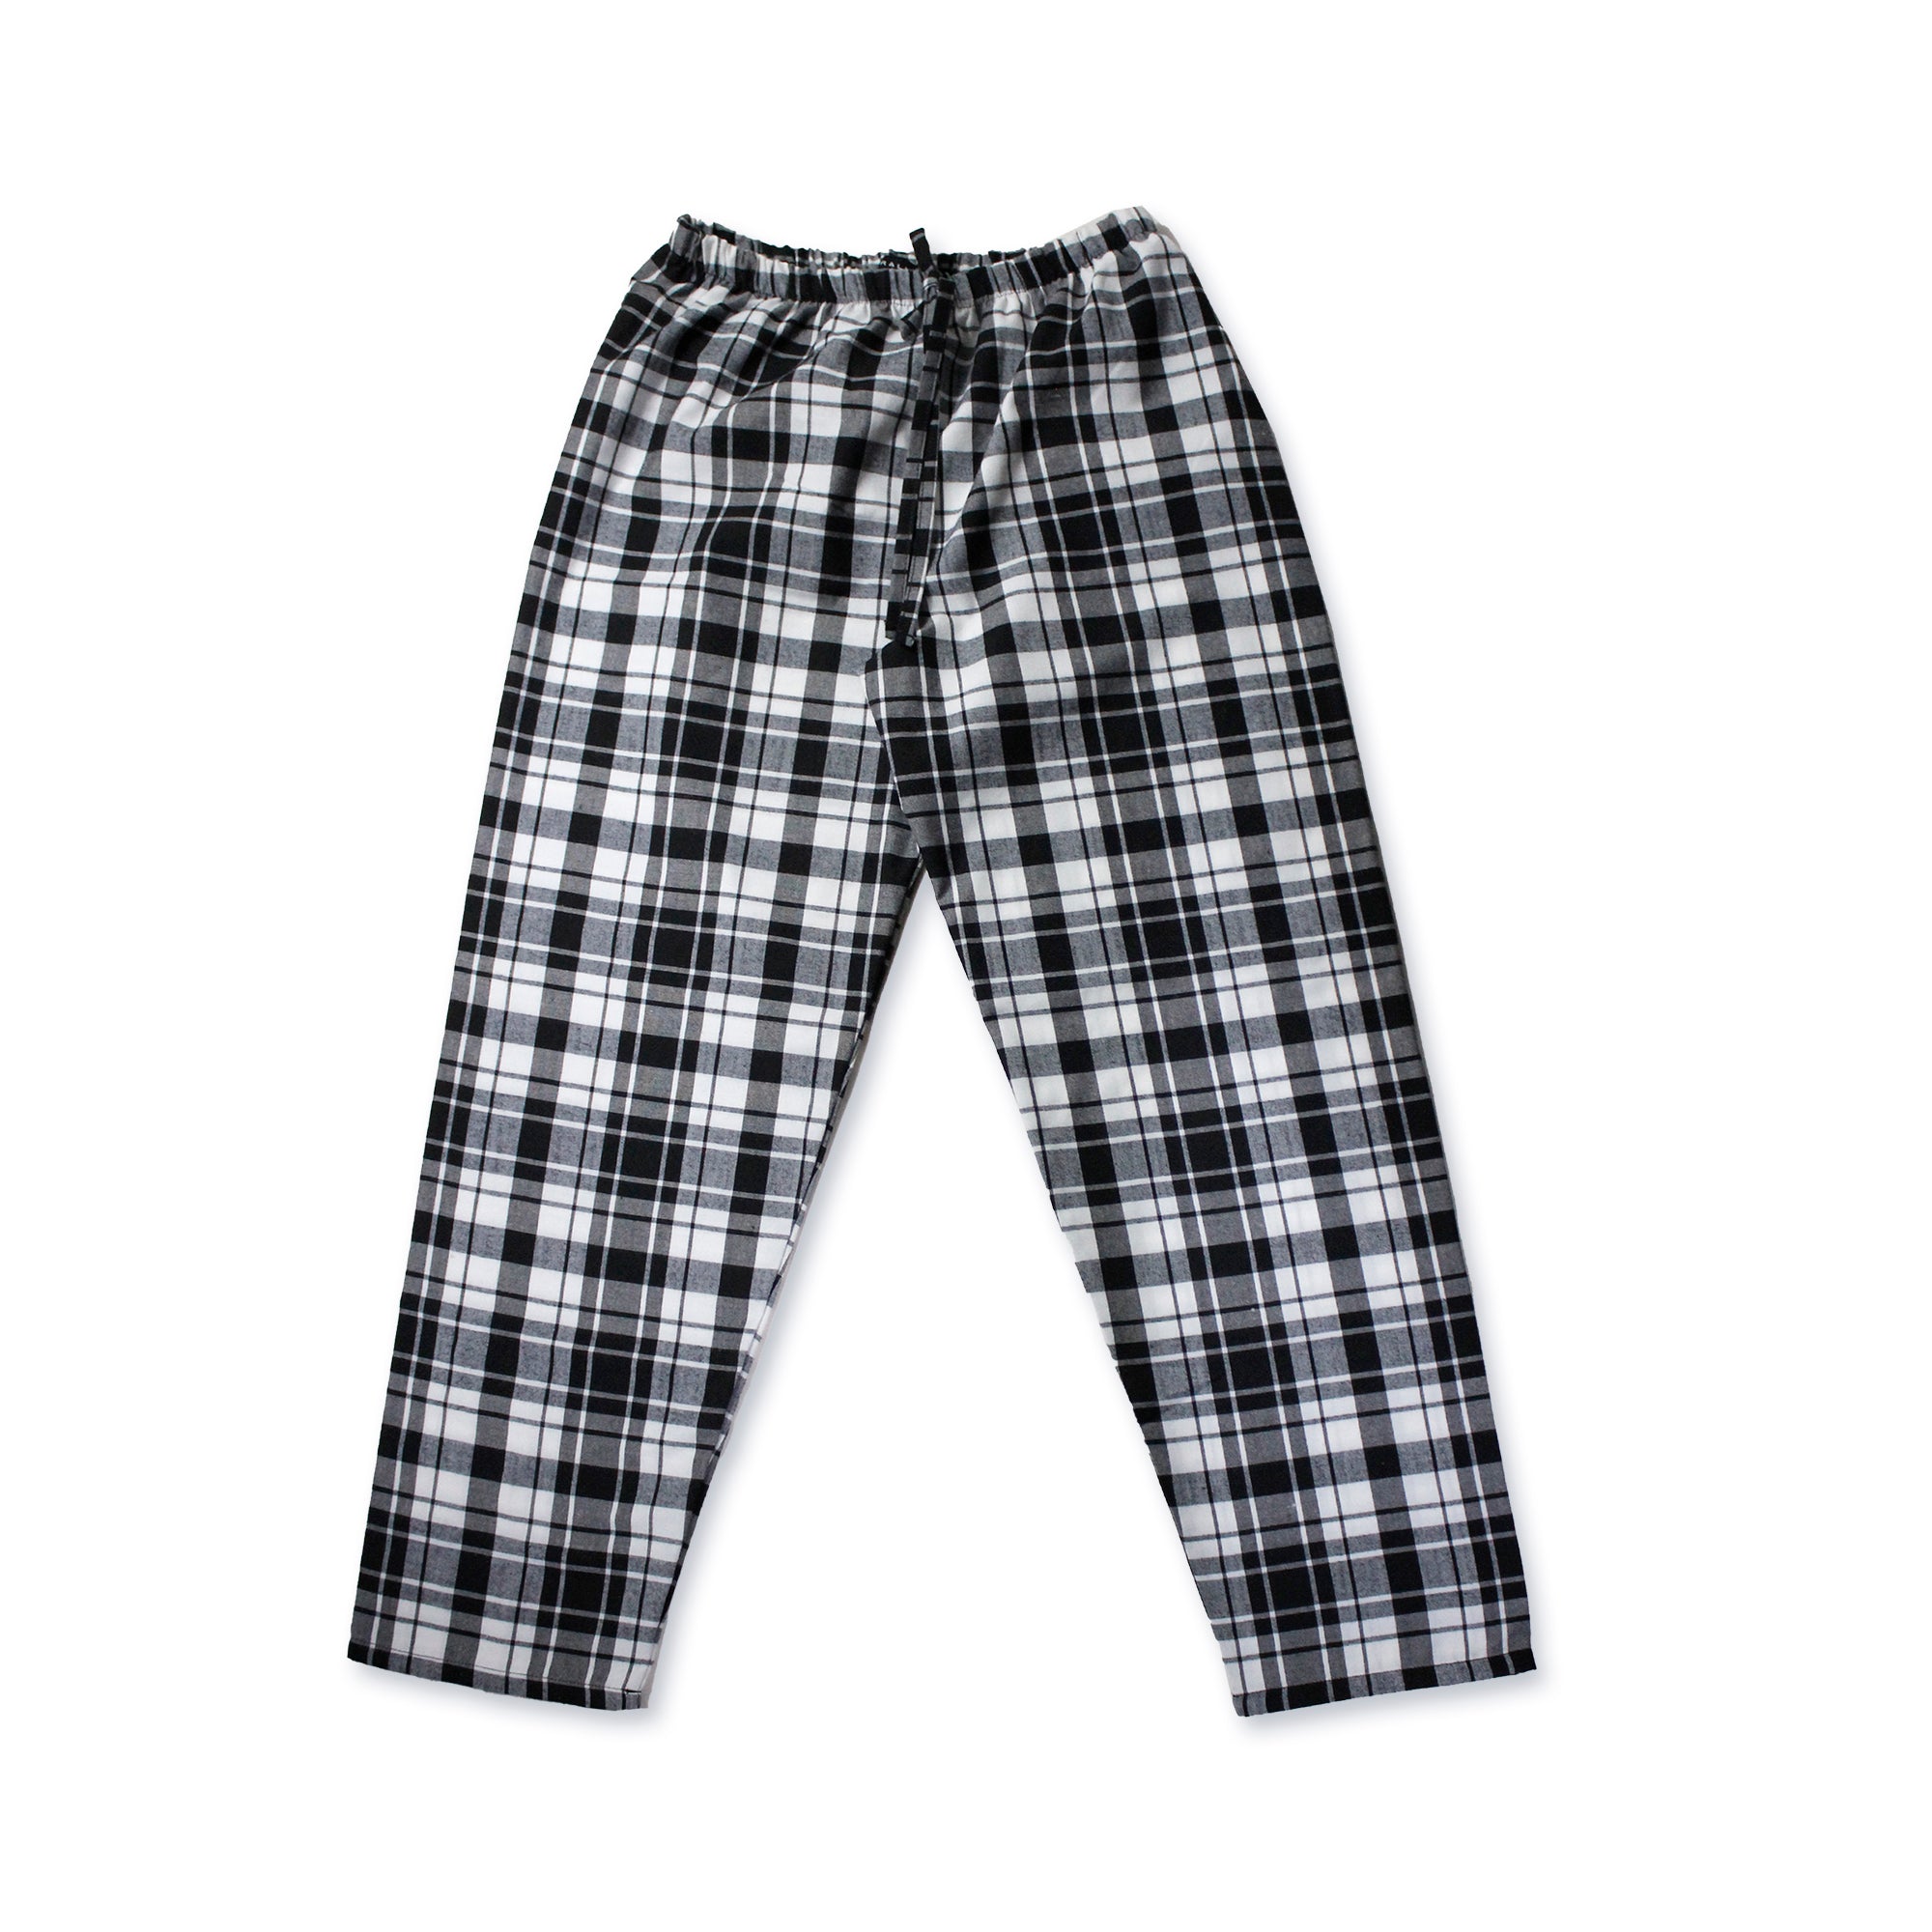 Pantalón de Pijama Negro/Blanco Unisex Niños 10013